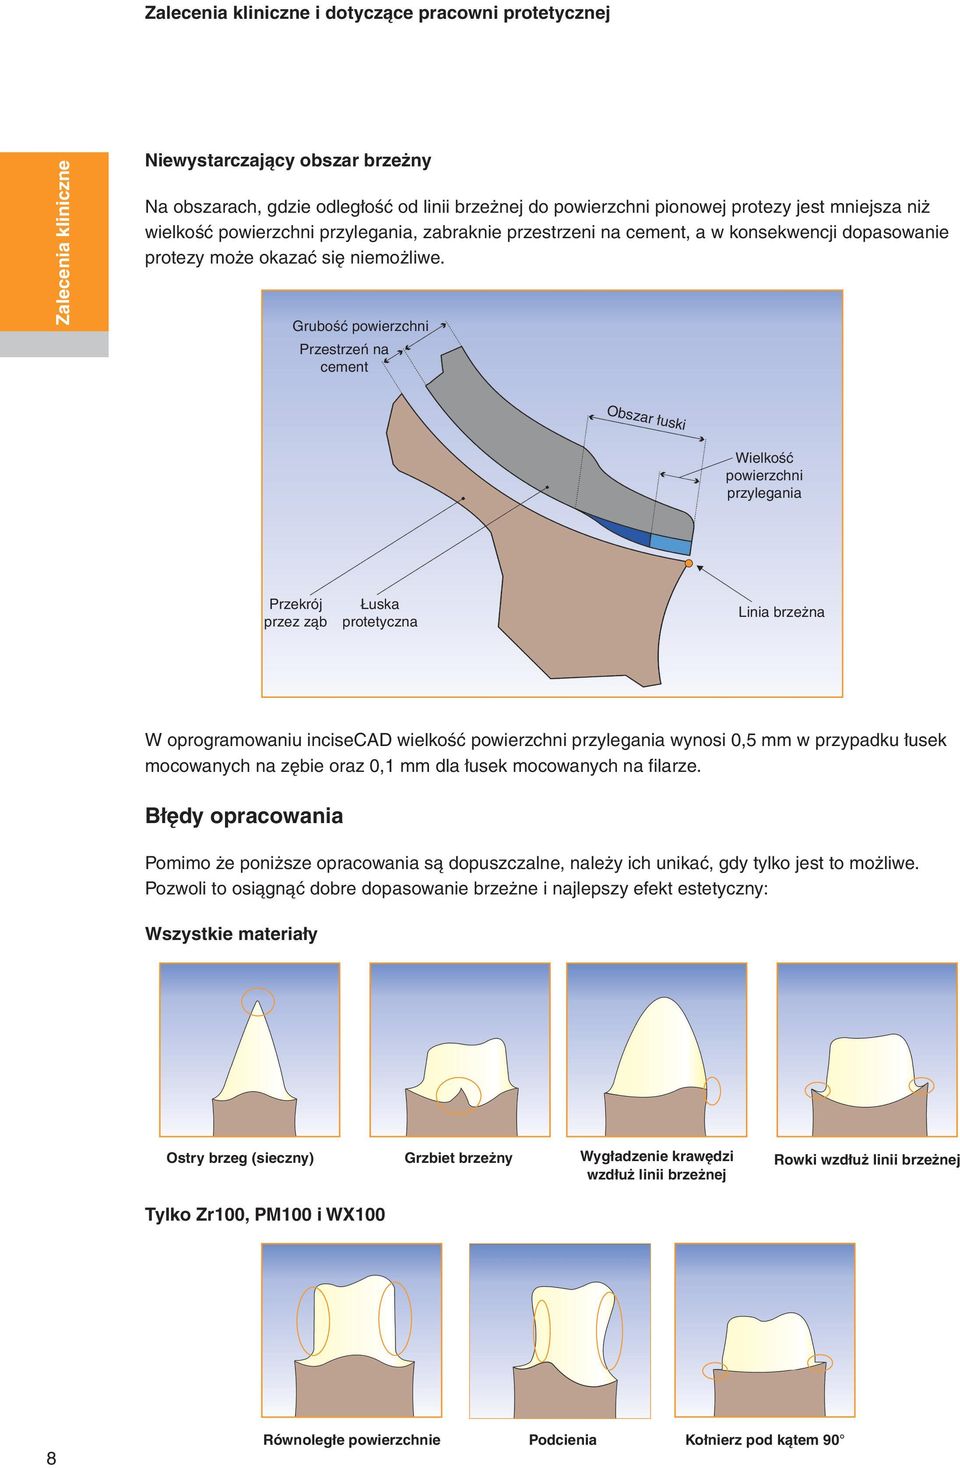 Grubość powierzchni Przestrzeń na cement Obszar łuski Wielkość powierzchni przylegania Przekrój przez ząb Łuska protetyczna Linia brzeżna W oprogramowaniu incisecad wielkość powierzchni przylegania